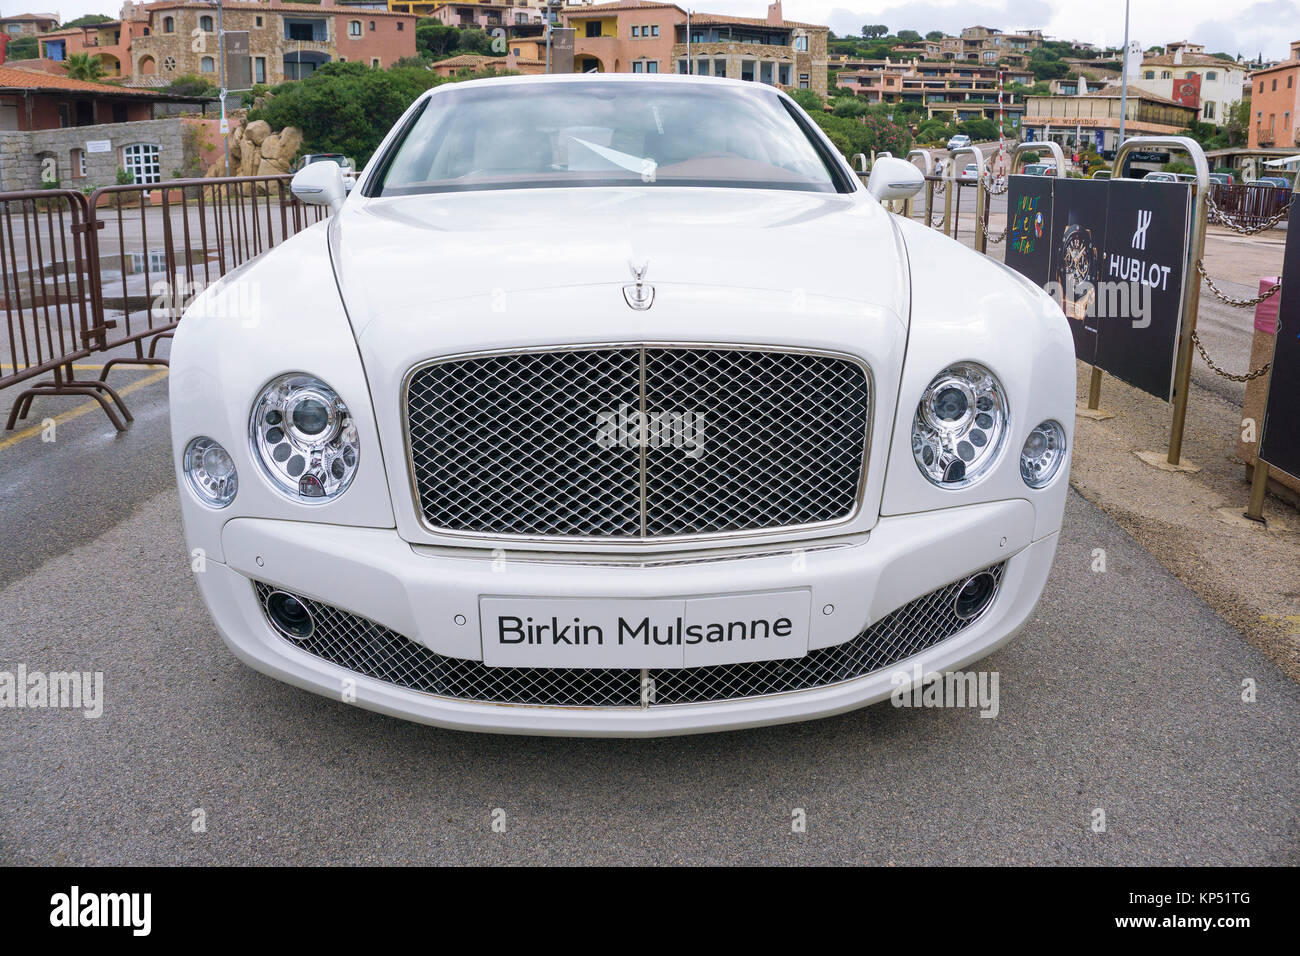 Birkin Bentley Mulsanne, édition limitée construit pour le marché européen et inspiré par Bentley Boy Tim Birkin, Porto Cervo, Costa Smeralda, Sardaigne Banque D'Images